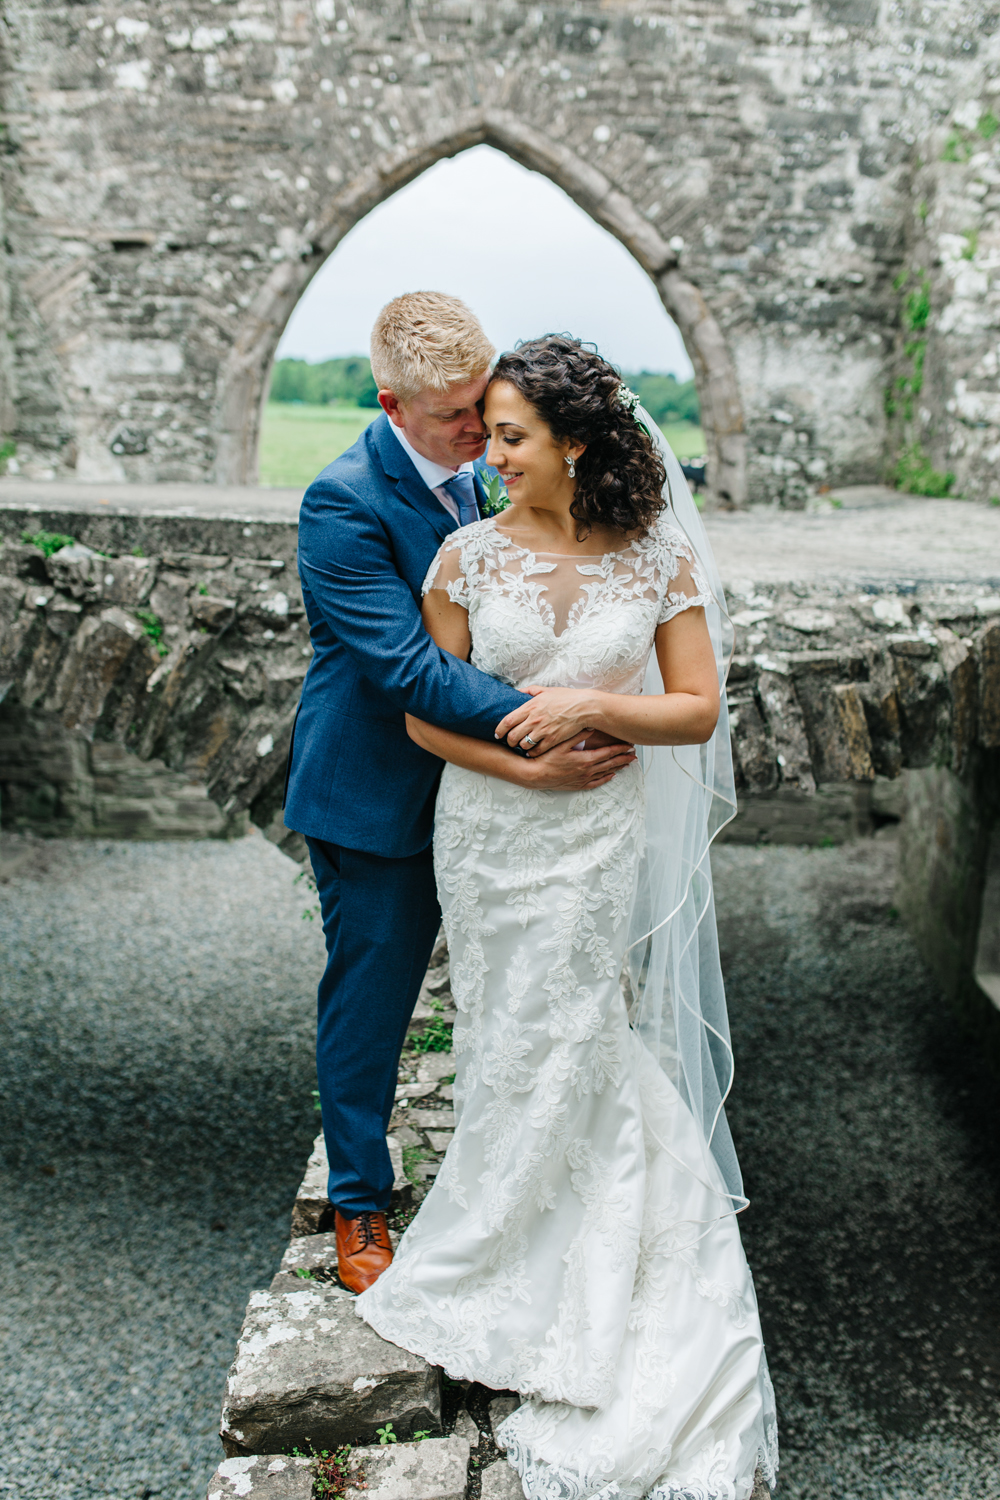 Nashville TN Wedding Photographer, Ireland Wedding Photographer, Destination Wedding Photographer, Ireland Elopement, Dublin Ireland, Ireland Wedding Photography